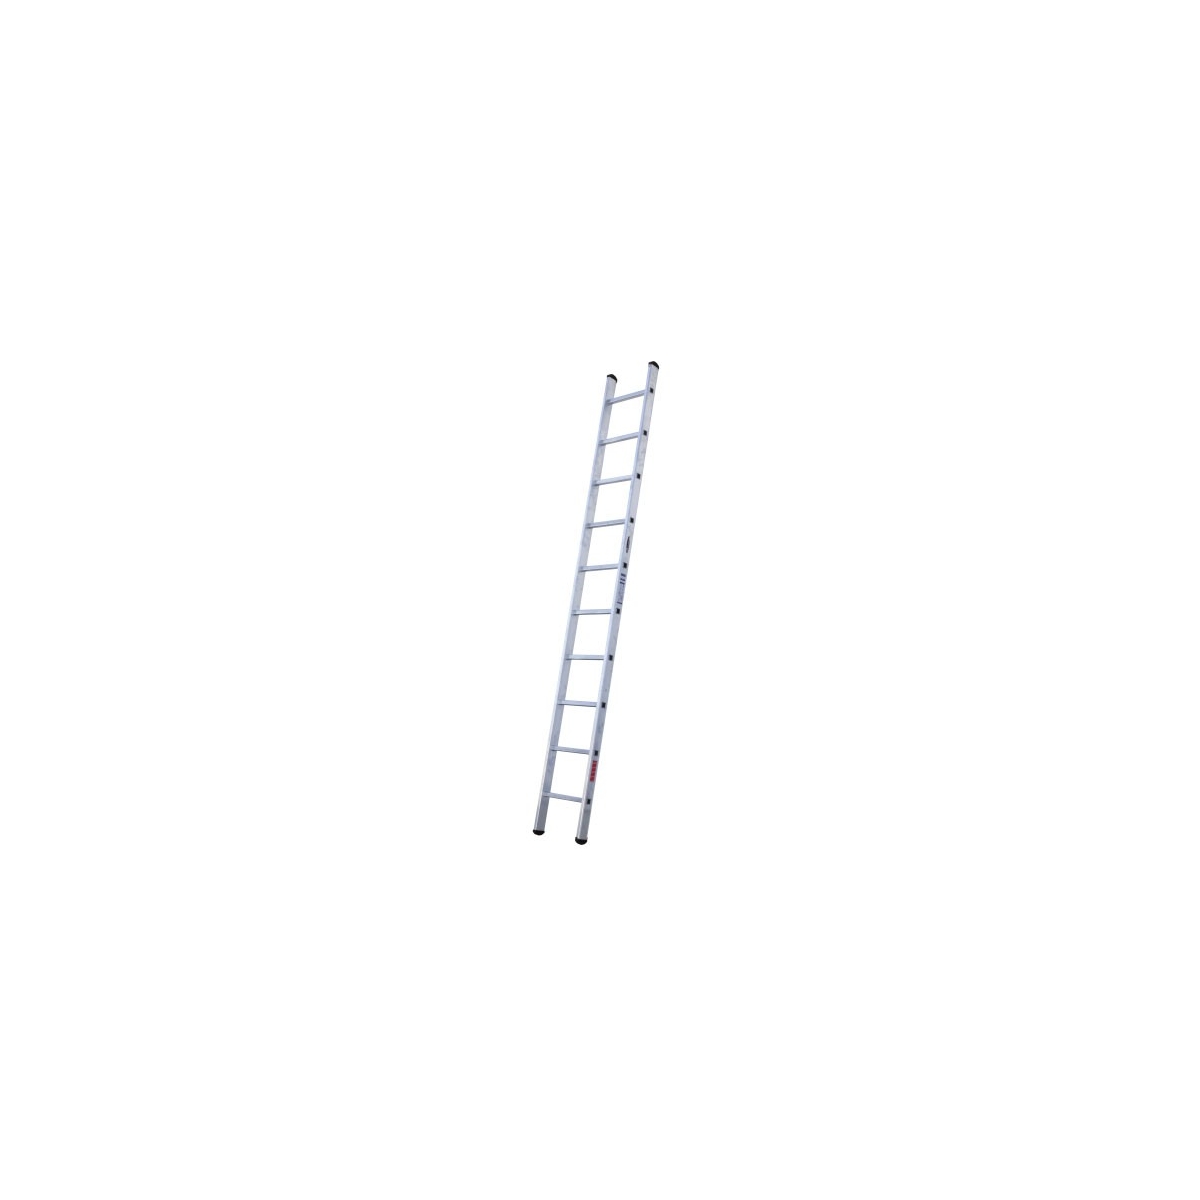 Escada 1 lance 13 degraus 3,50 - 4,40 m